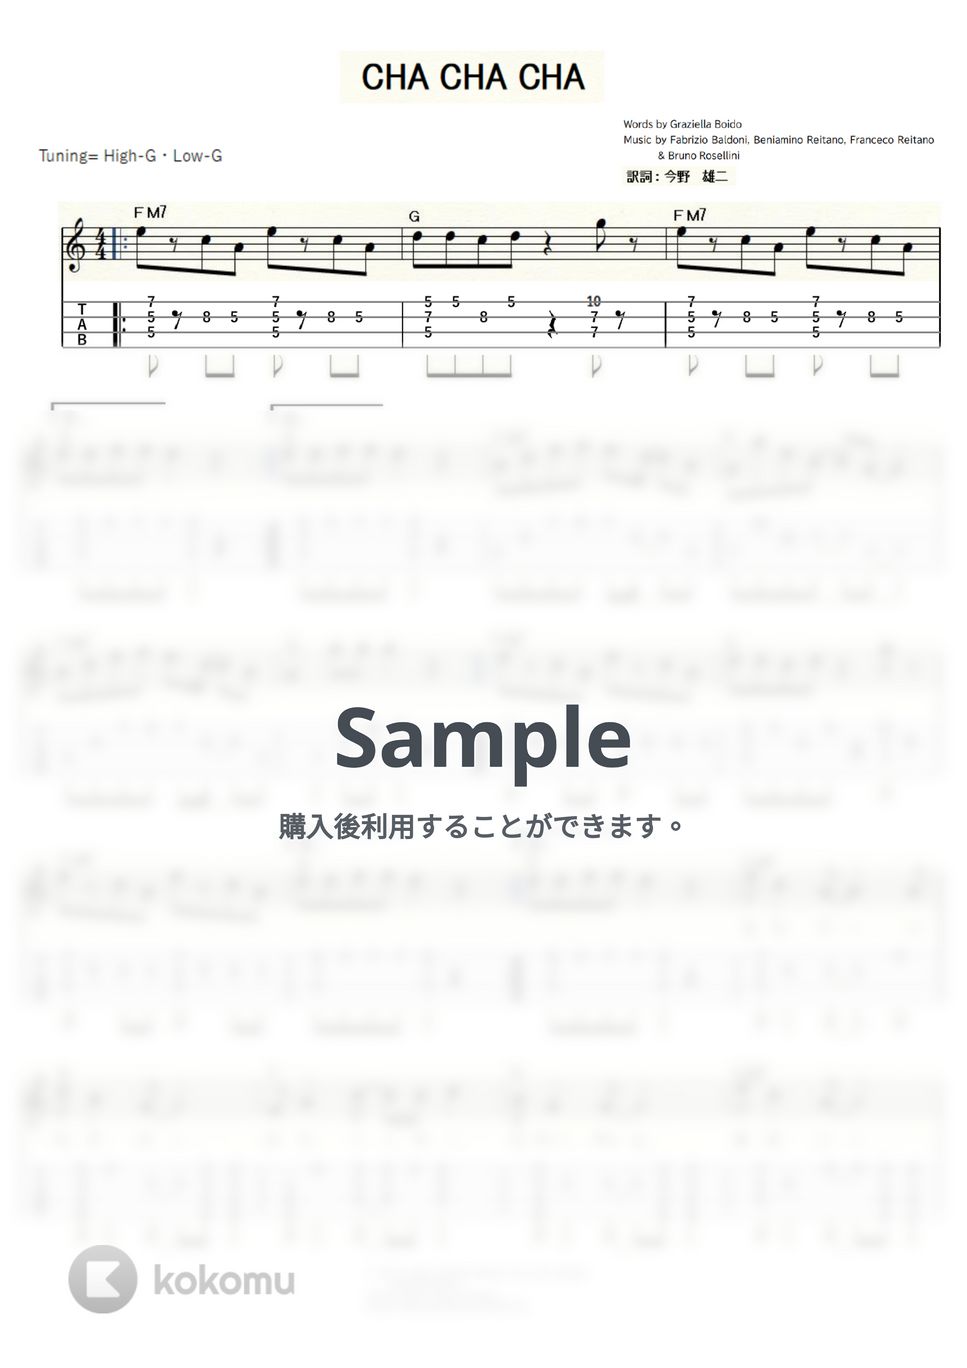 石井明美 - CHA-CHA-CHA (ｳｸﾚﾚｿﾛ/High-G・Low-G/中級) by ukulelepapa